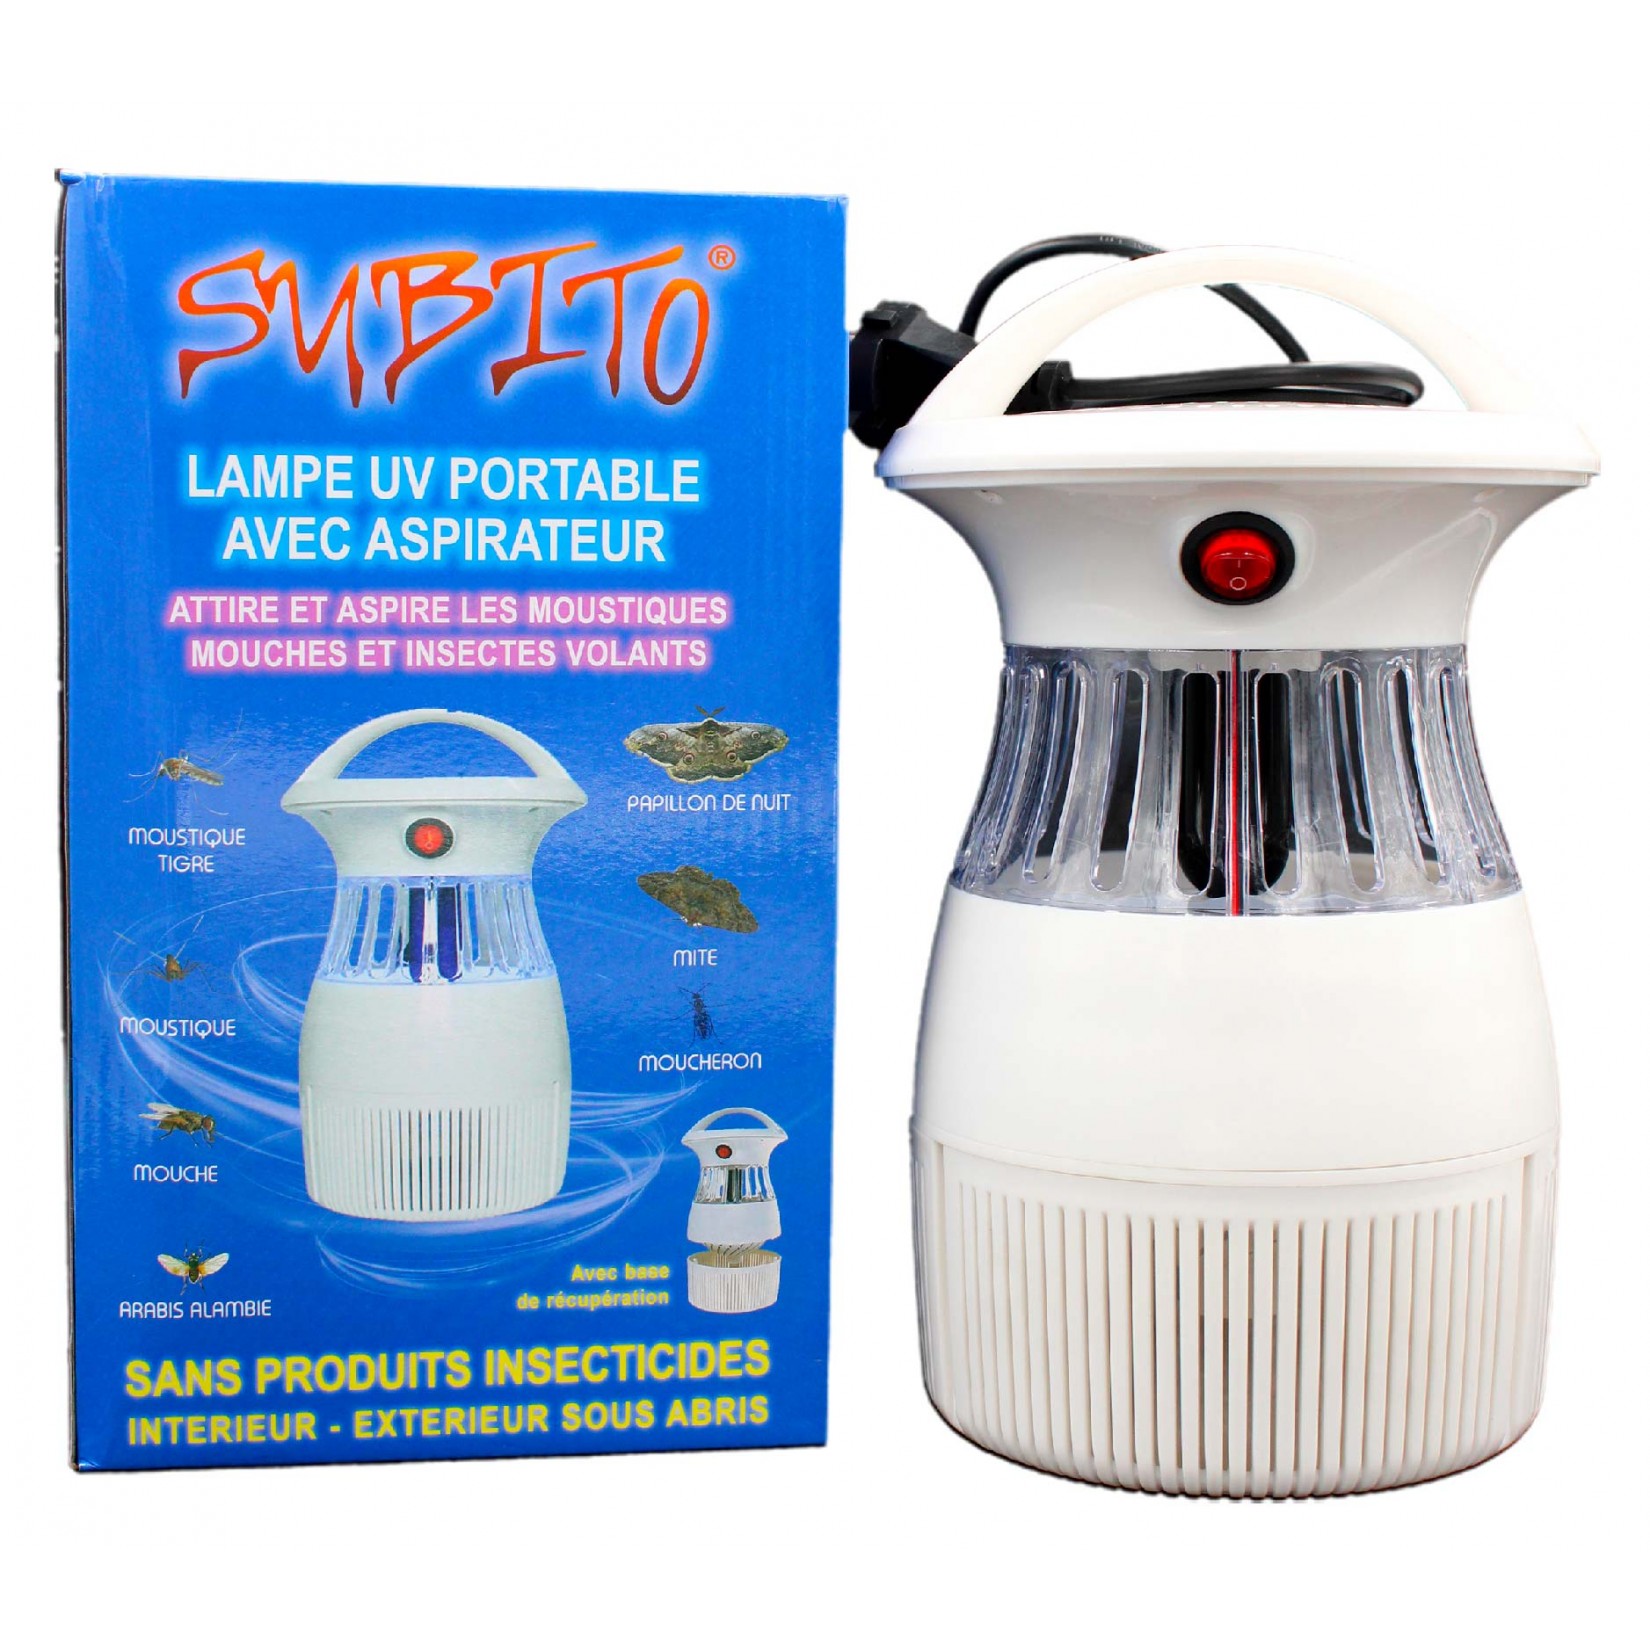 Lampe UltraViolet portable avec aspirateur à insectes volants Subito 4 | Insecticide Antinuisible Qualité Professionnelle